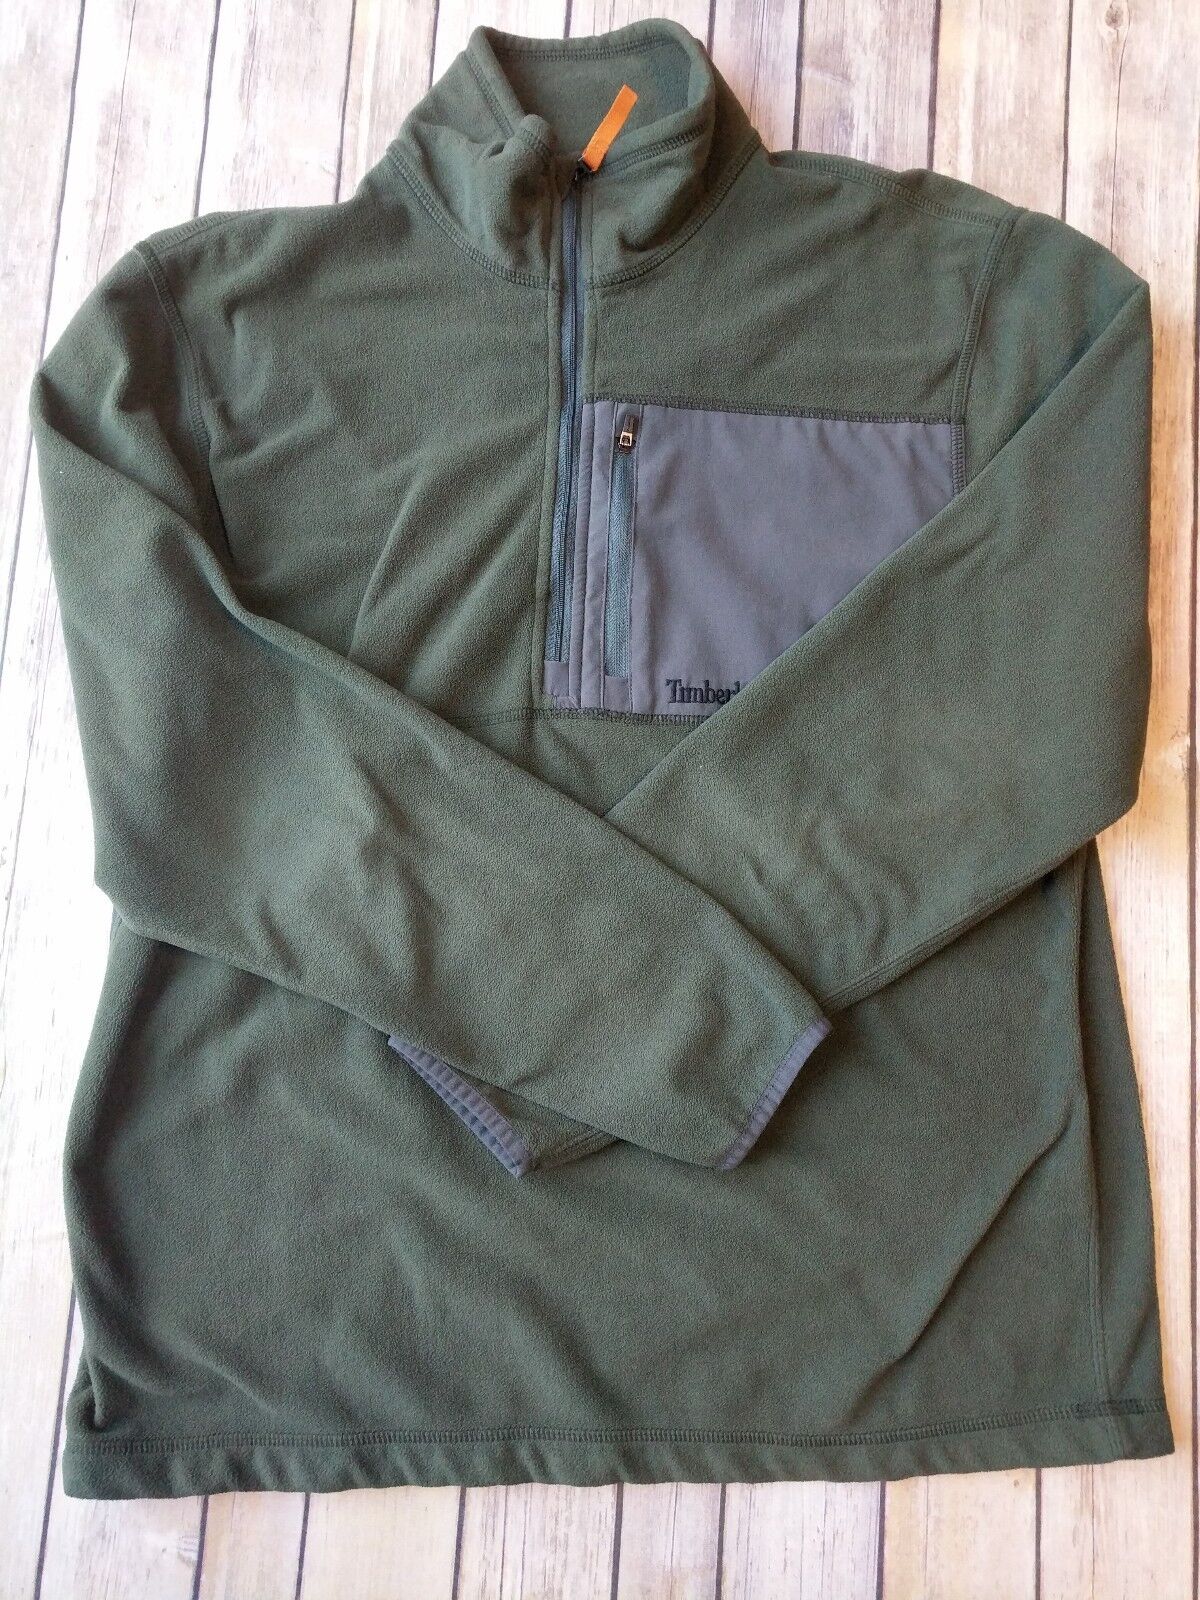 Green Timberland Fleece Jacket 1/4 zip Large - image 1